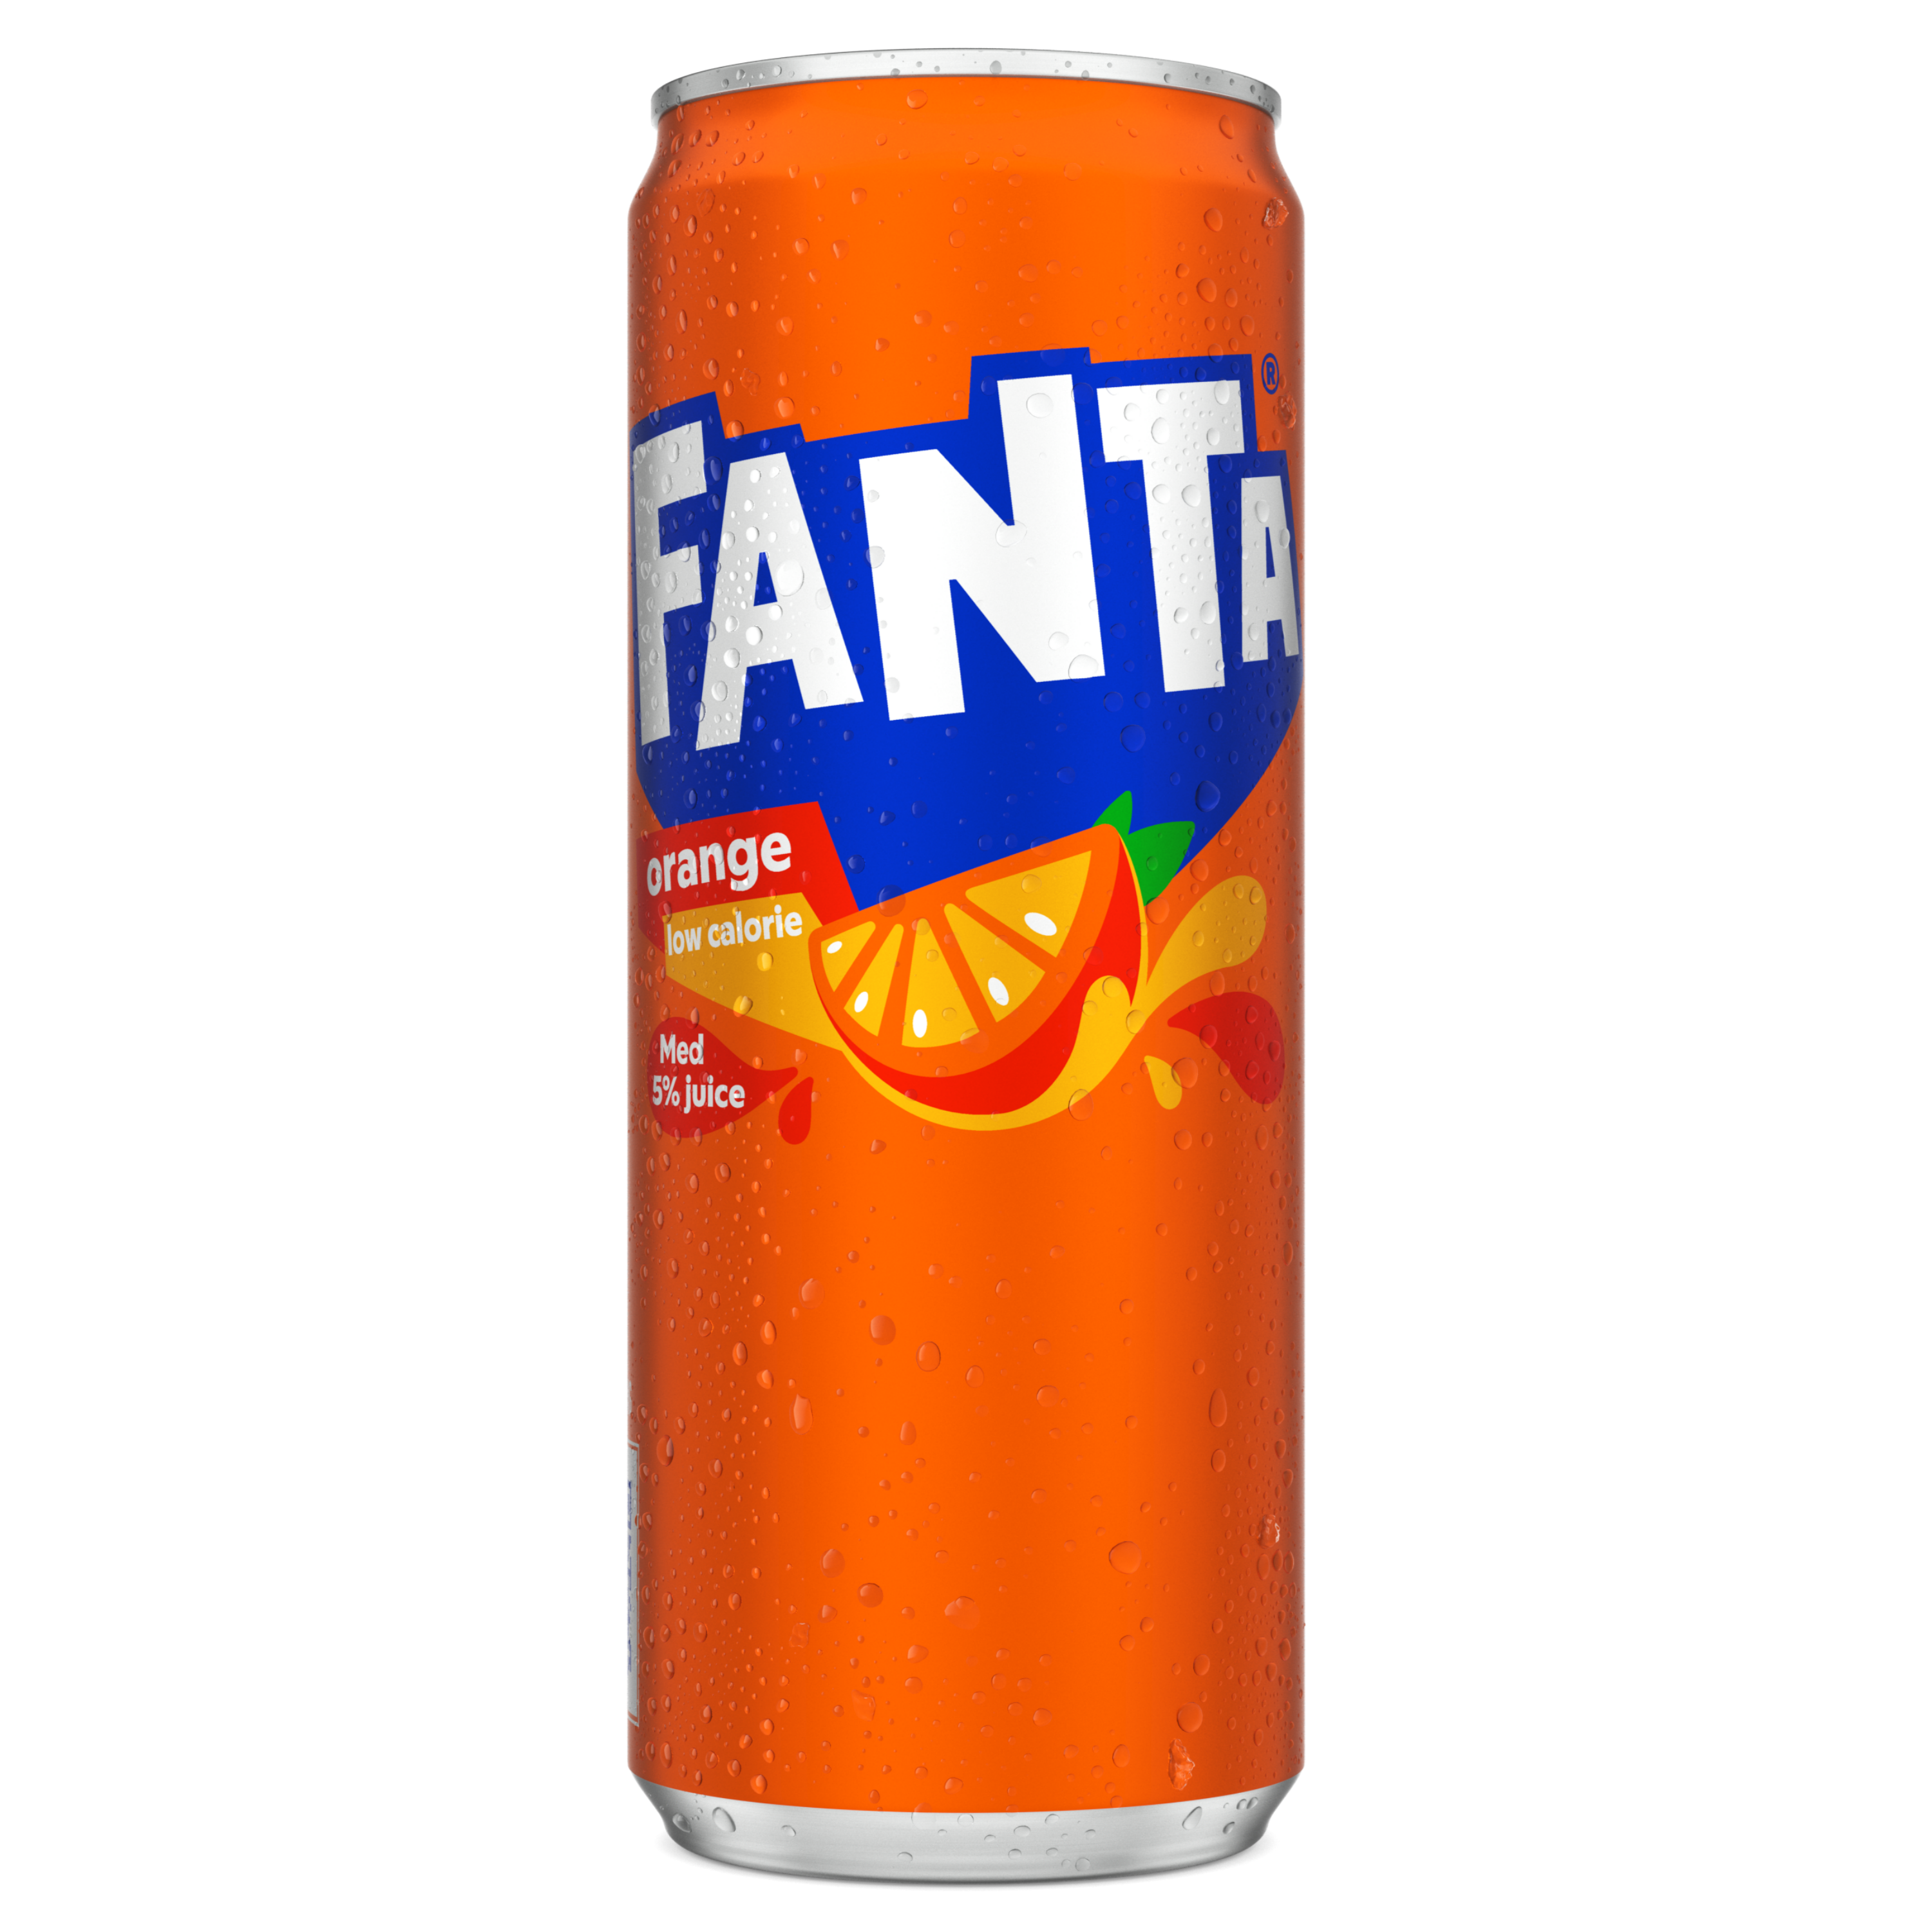 En läskburk med Fanta Orange